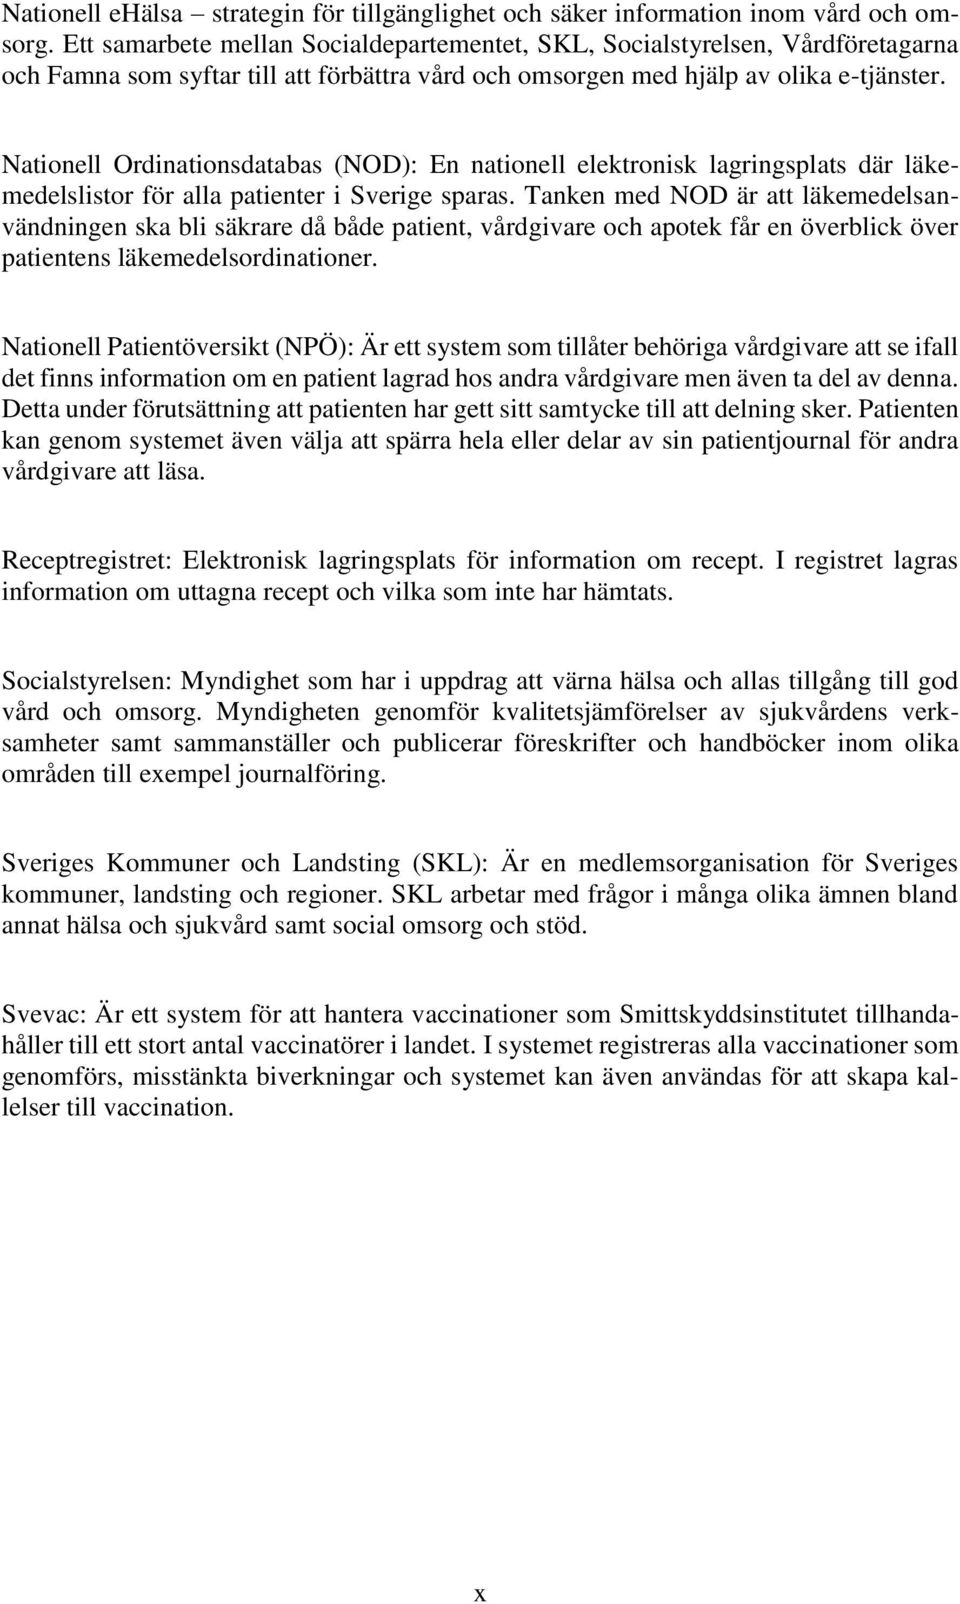 Nationell Ordinationsdatabas (NOD): En nationell elektronisk lagringsplats där läkemedelslistor för alla patienter i Sverige sparas.